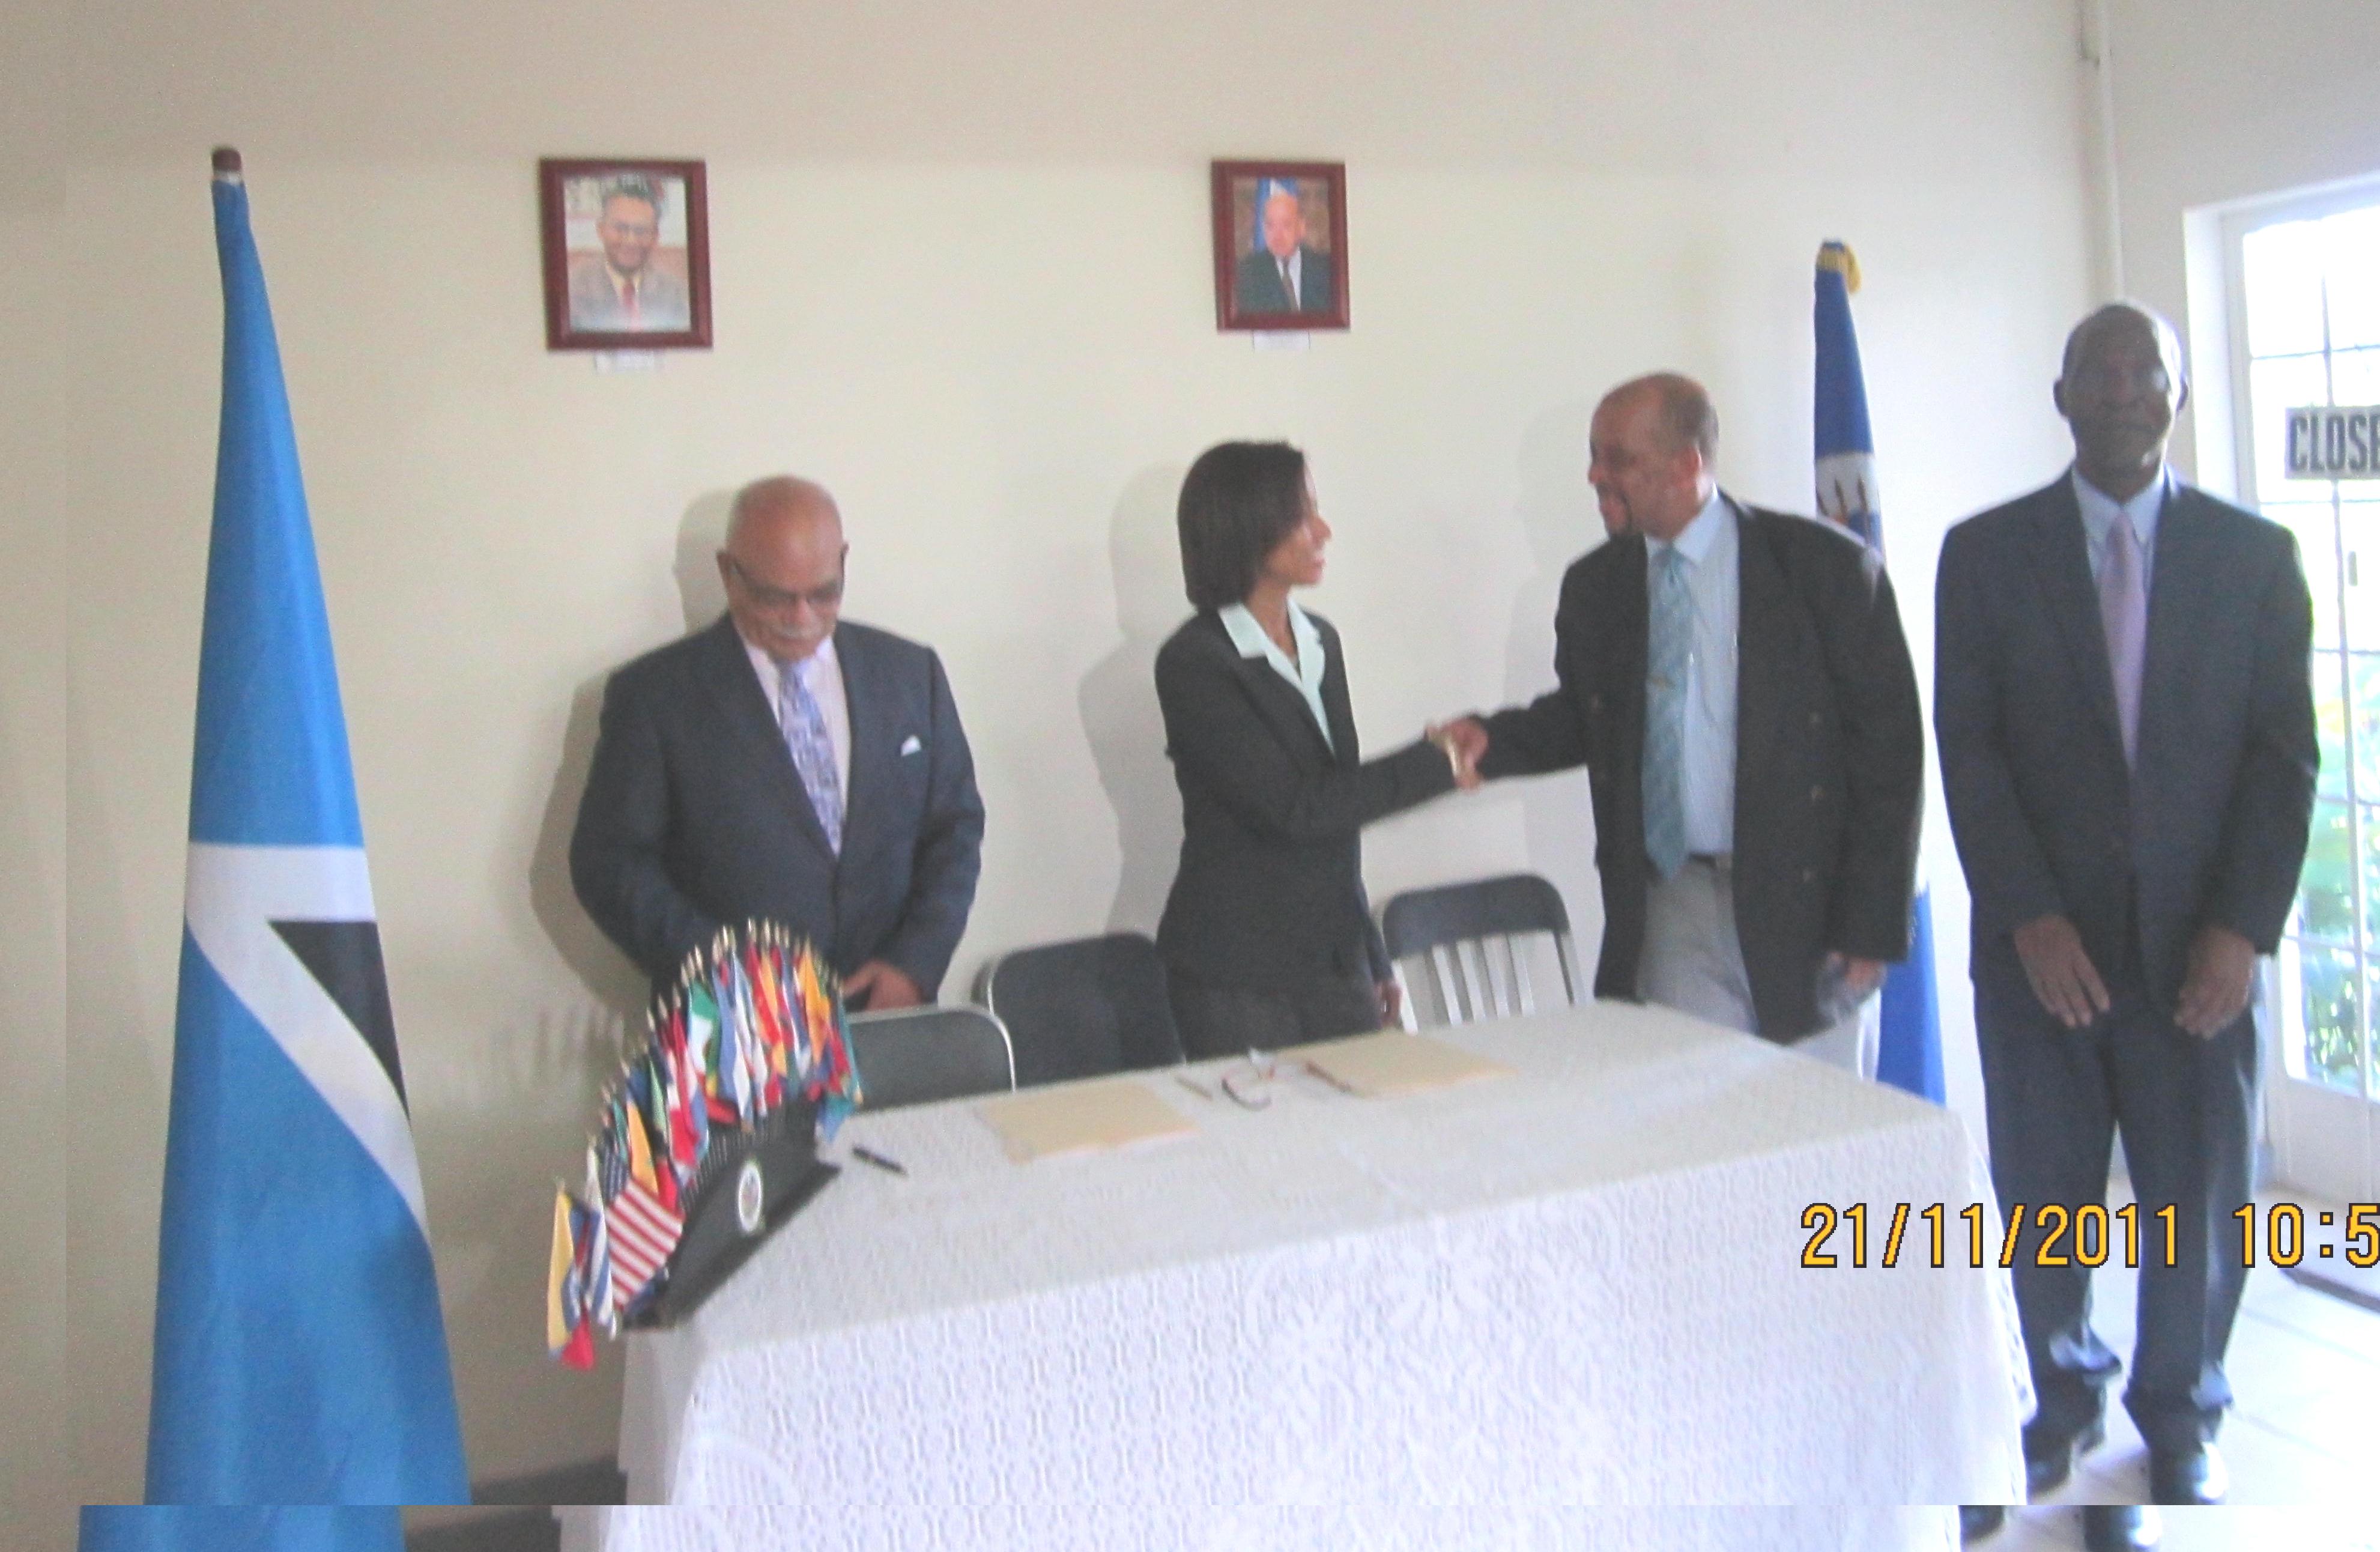 Signature of Election Observation Mission(November 21, 2011)